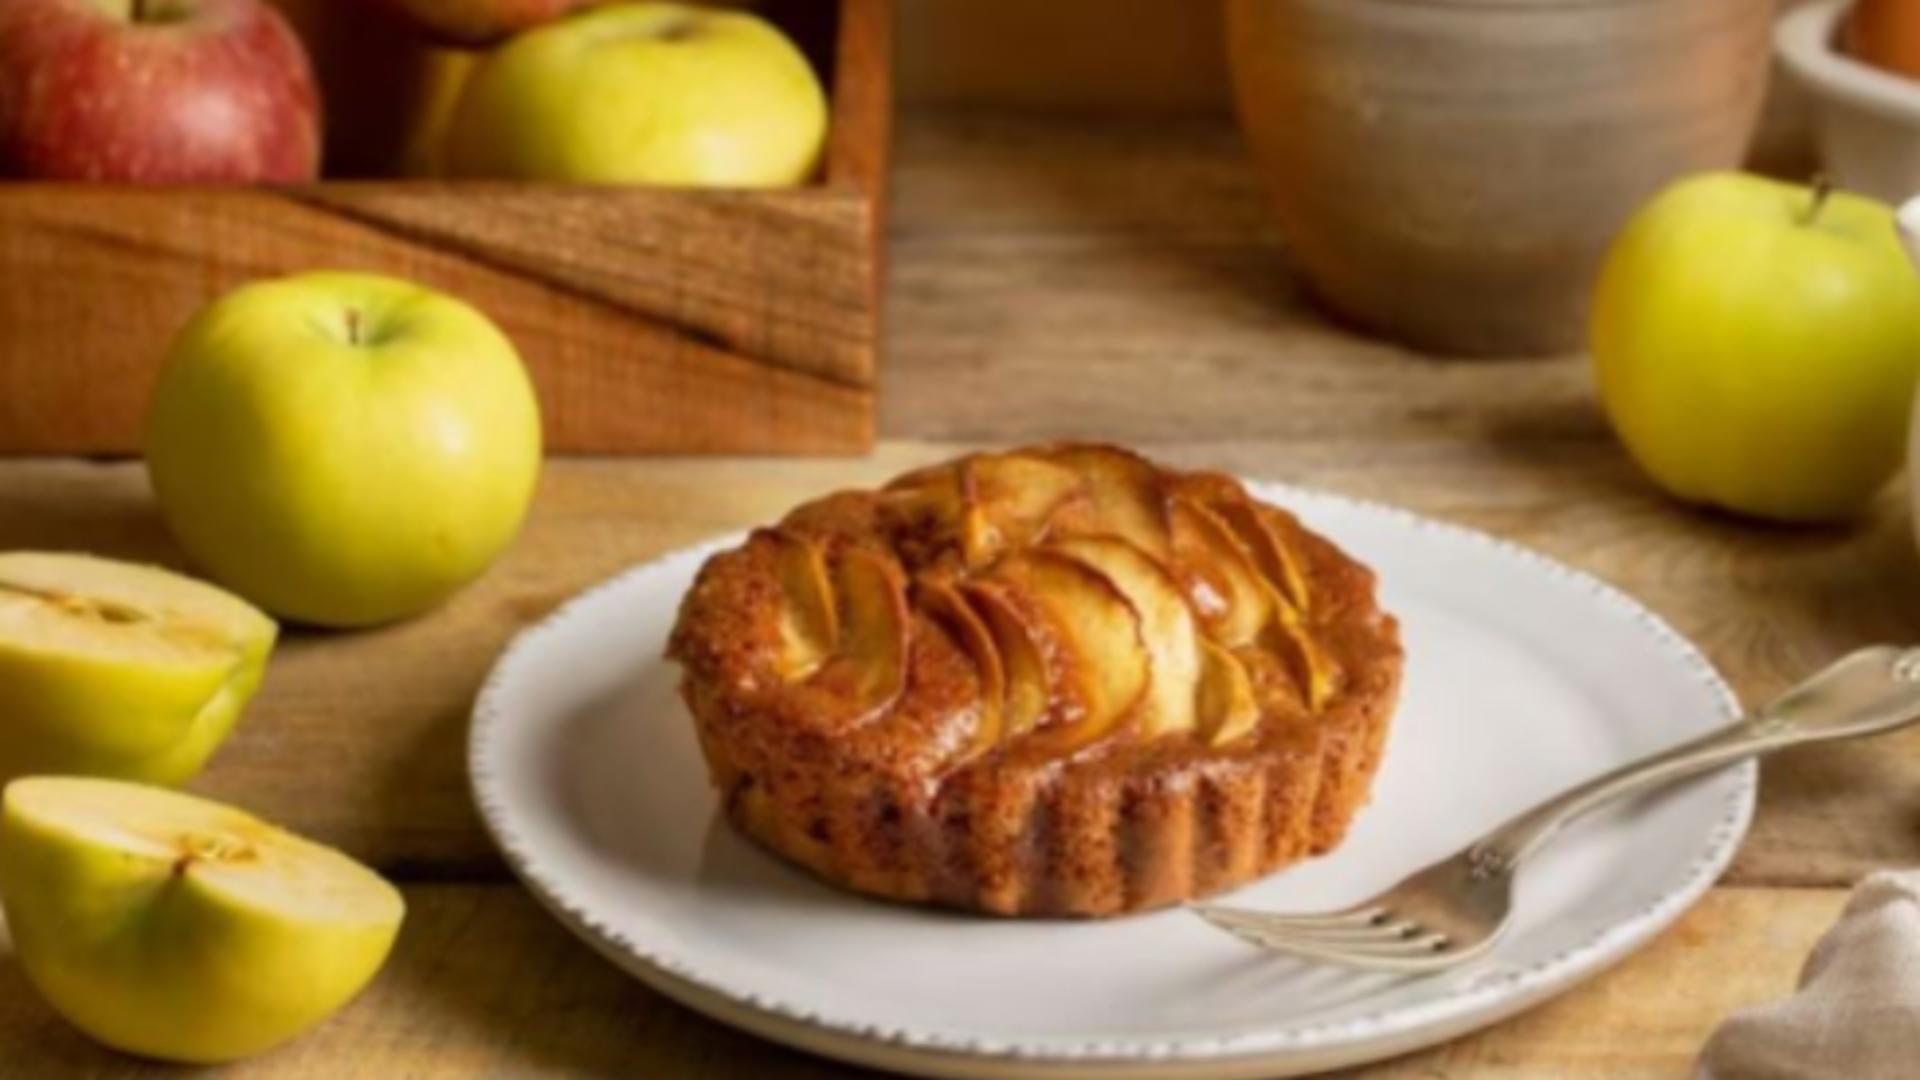 Prăjitura de mere de care te vei îndrăgosti! Are foarte puține calorii și merge perfect la cafeaua de dimineață - Cum se prepară